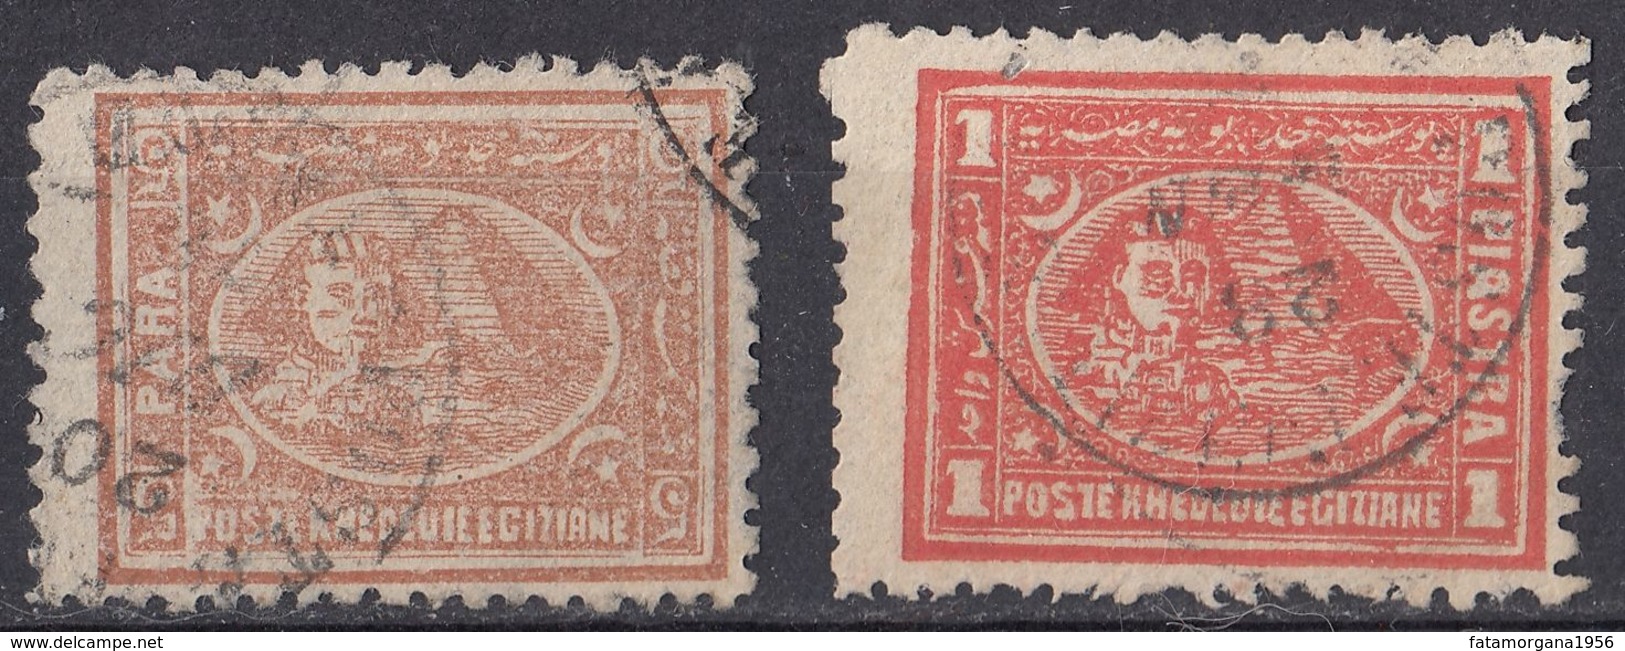 EGITTO - 1874/1875 - Lotto Di 2 Valori Usati: Yvert 14A E 17A, Come Da Immagine. - 1866-1914 Khedivato Di Egitto